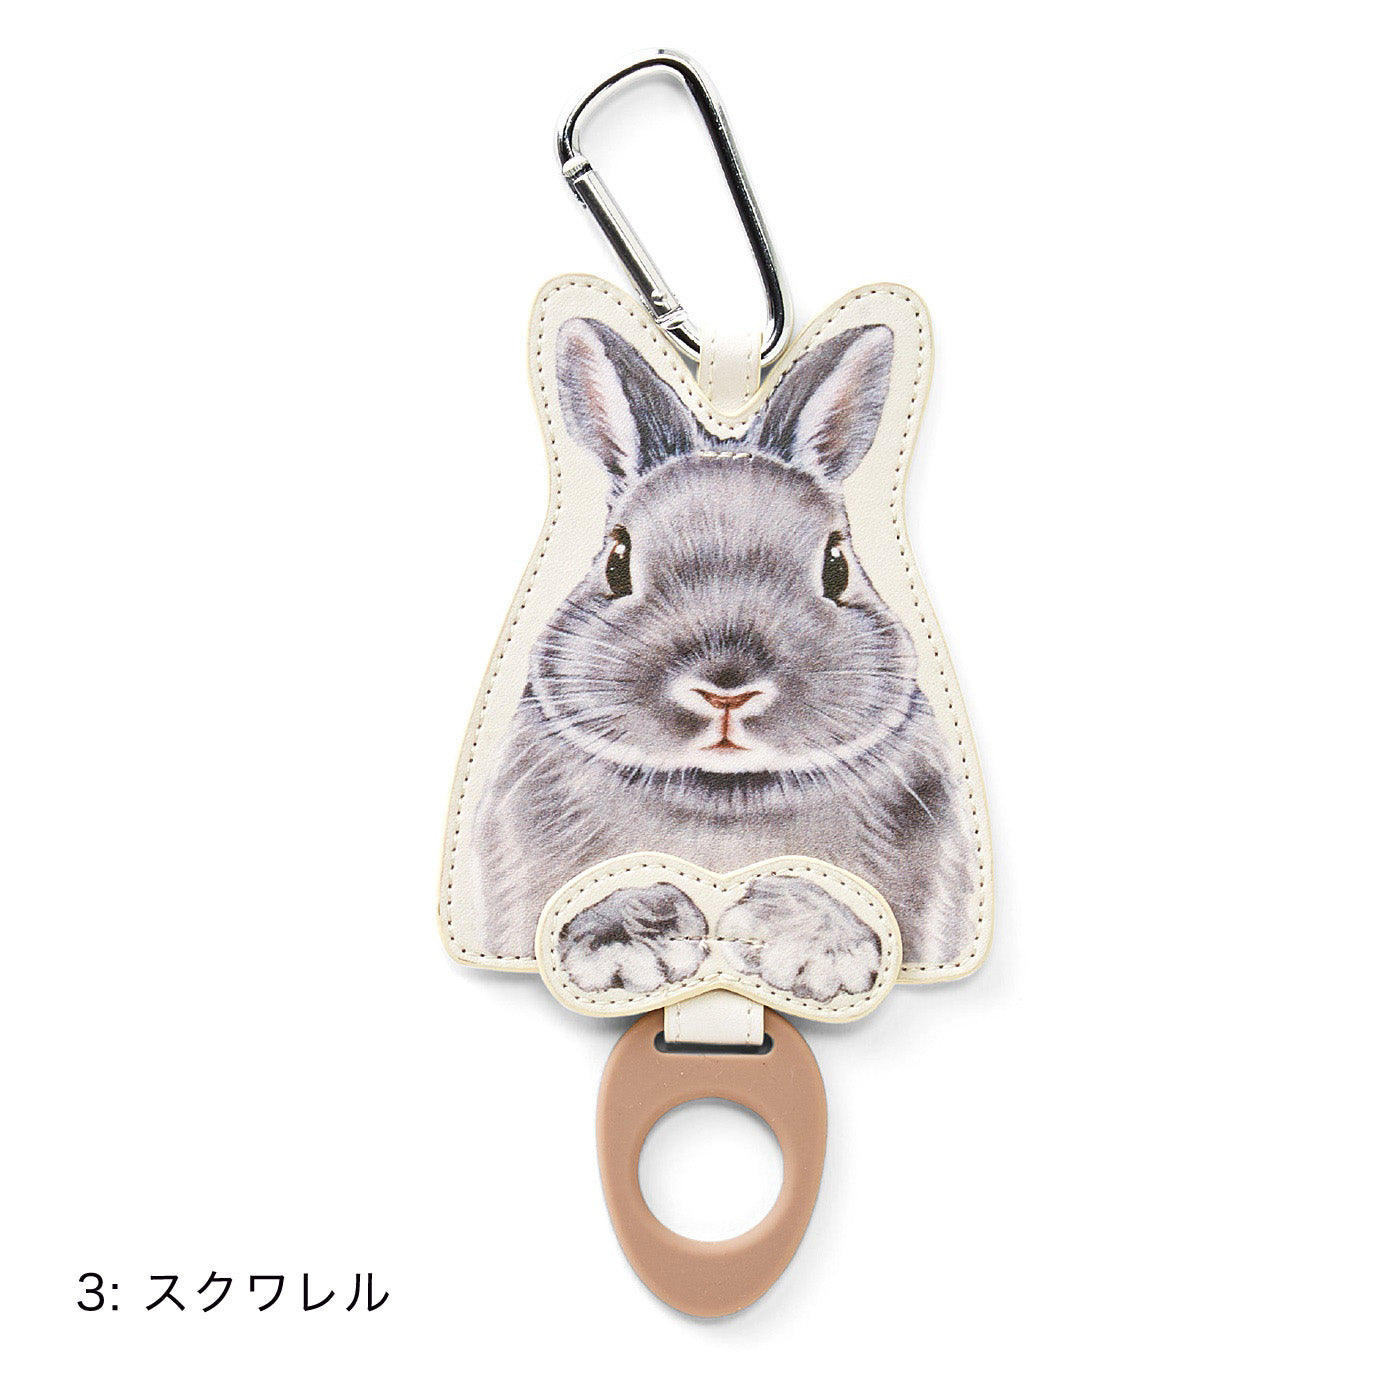 【預購】日本進口 YOU+MORE!兔子塑料瓶瓶套 - Cnjpkitchen ❤️ 🇯🇵日本廚具 家居生活雜貨店